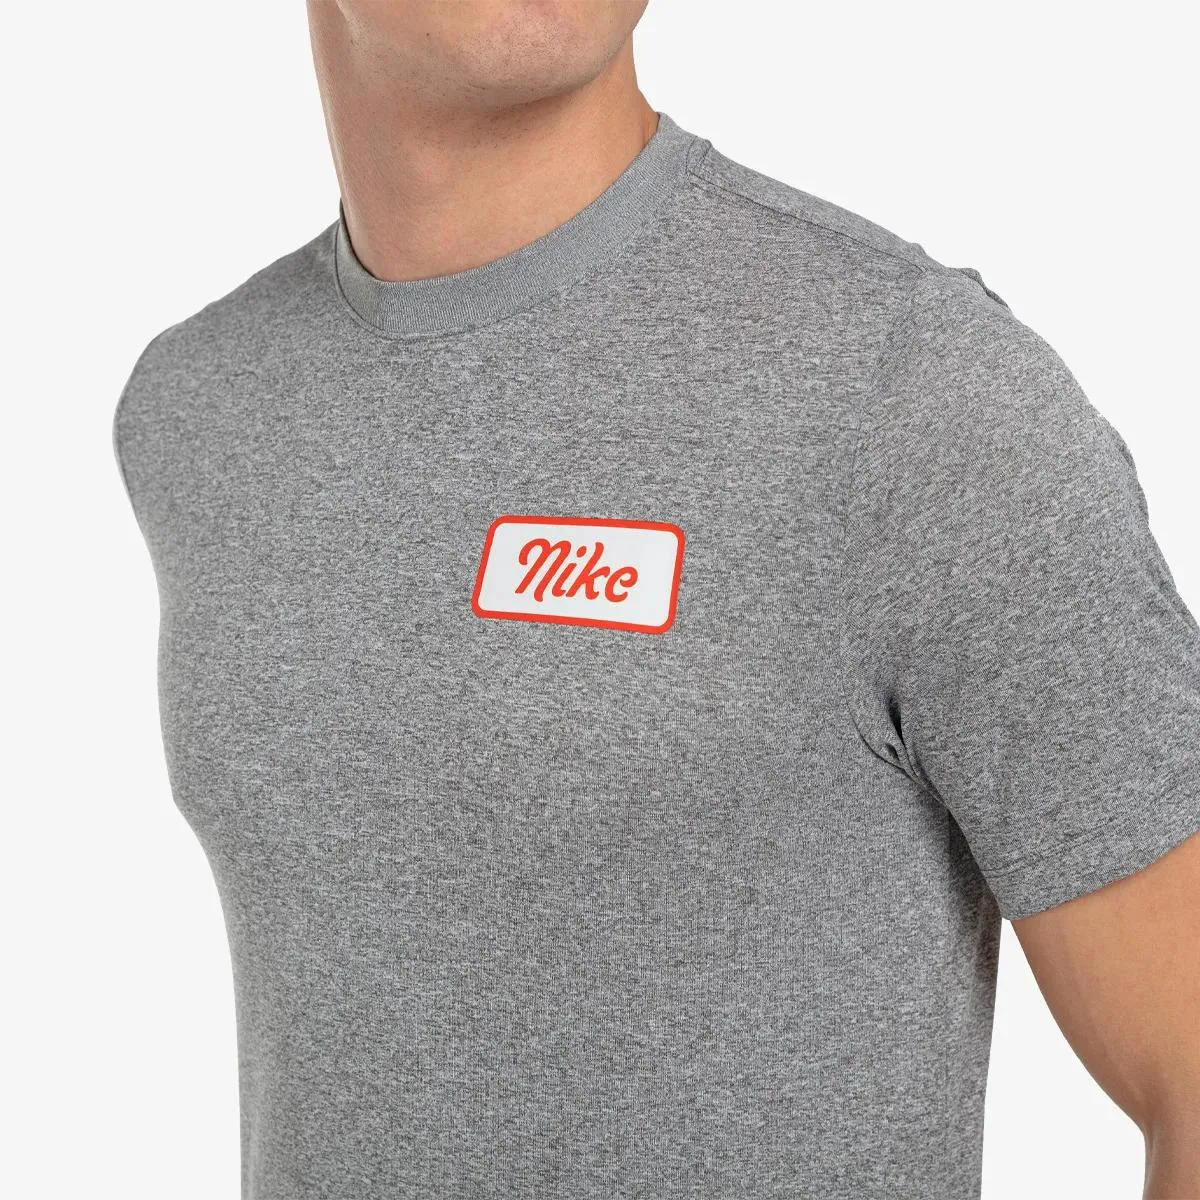 Nike T-shirt BODY SHOP 2 